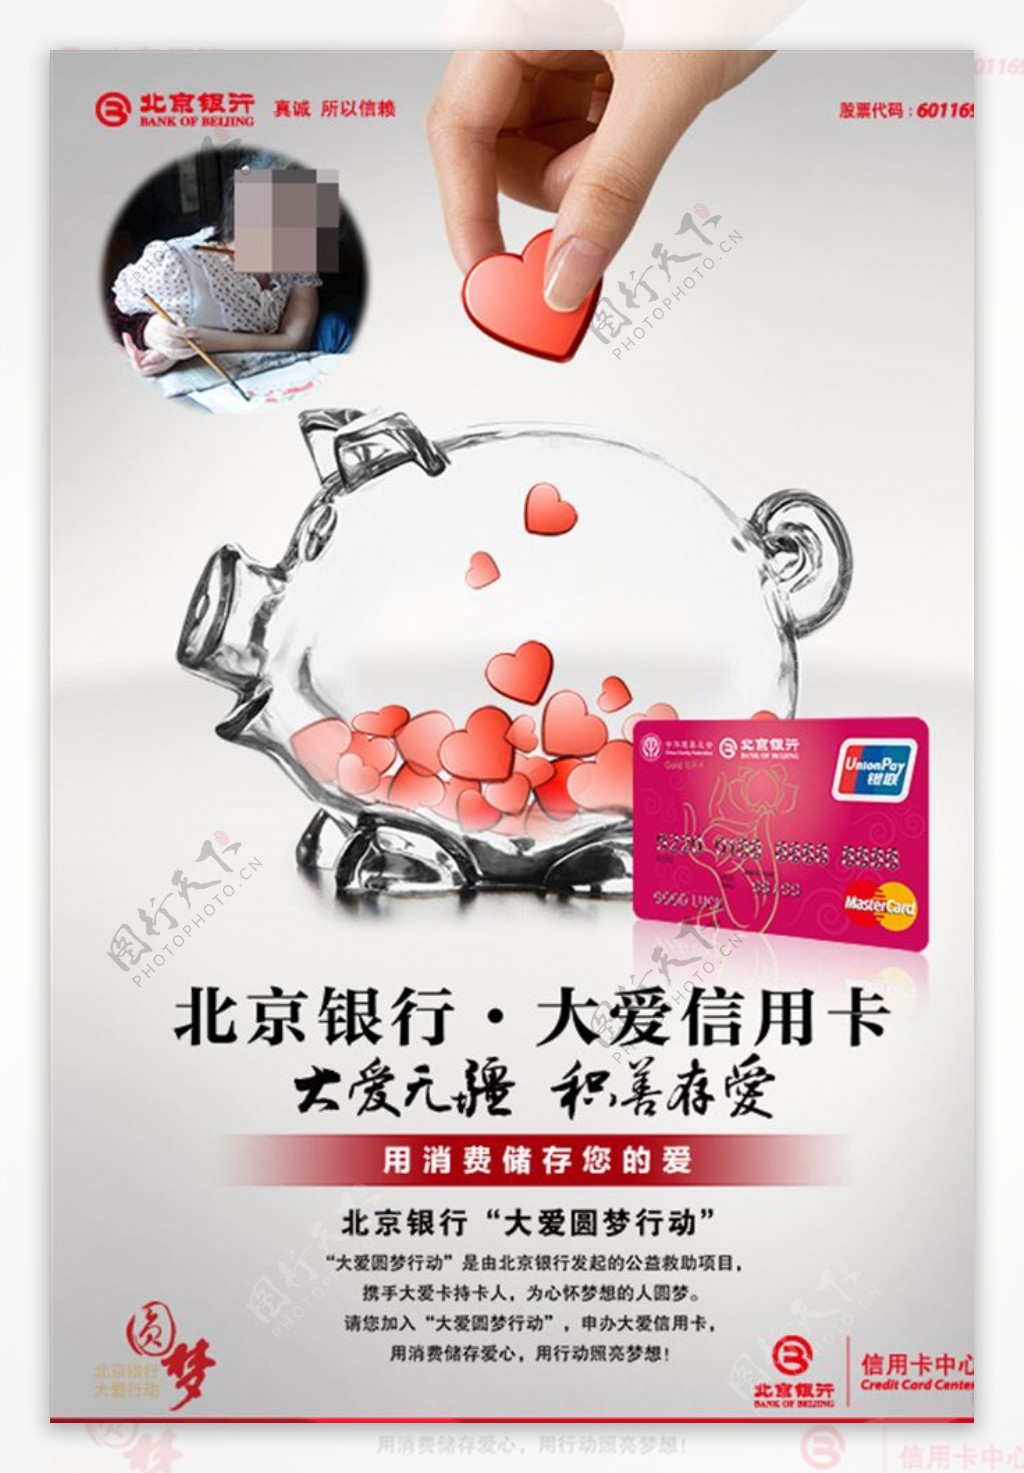 北京银行大爱信用卡